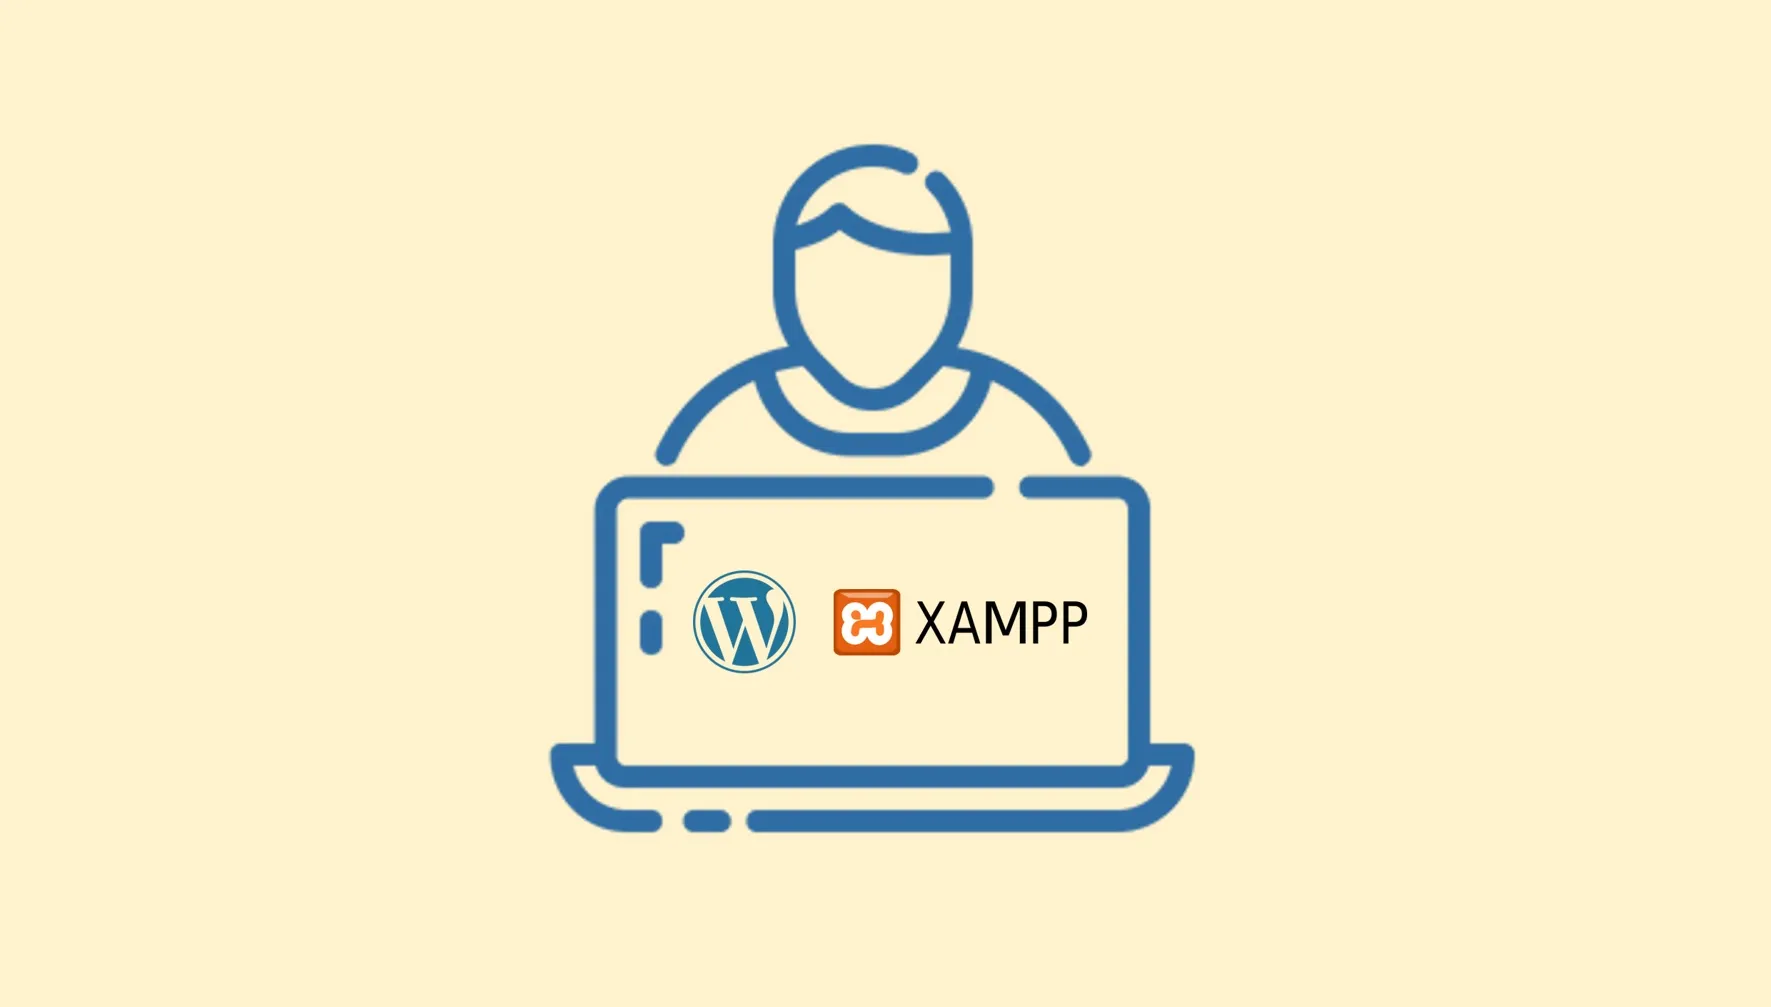 Hướng dẫn sử dụng XAMPP cho quá trình phát triển